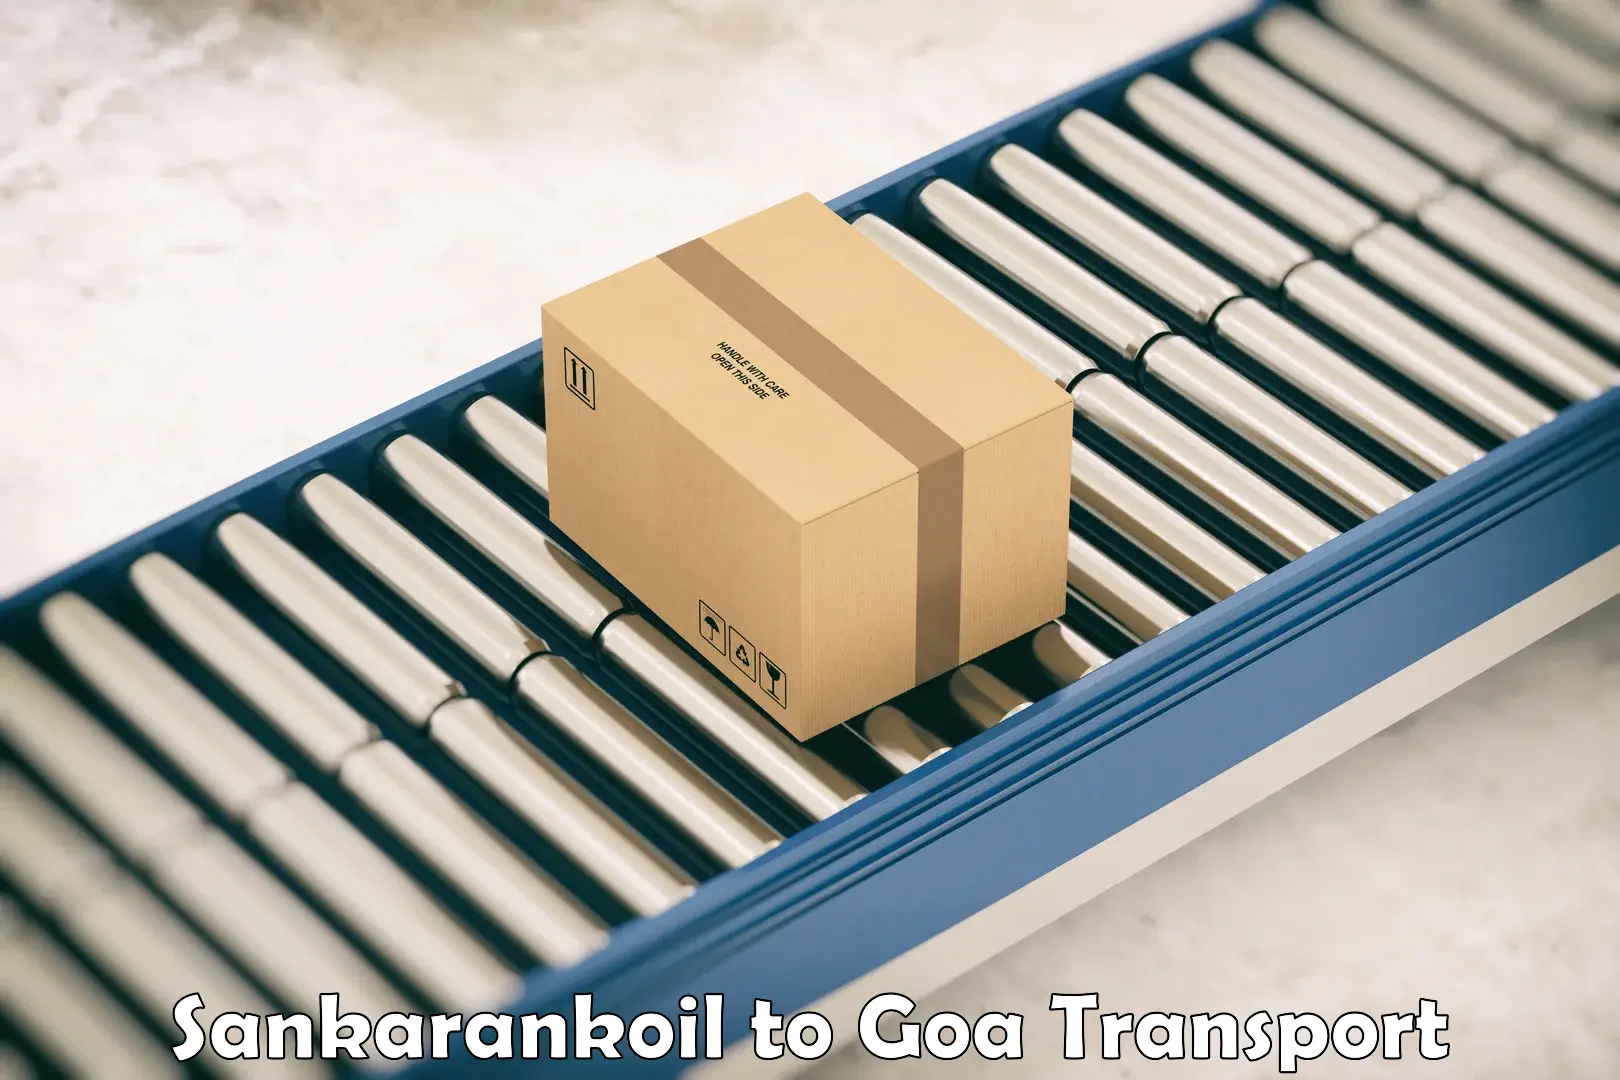 Shipping partner Sankarankoil to IIT Goa